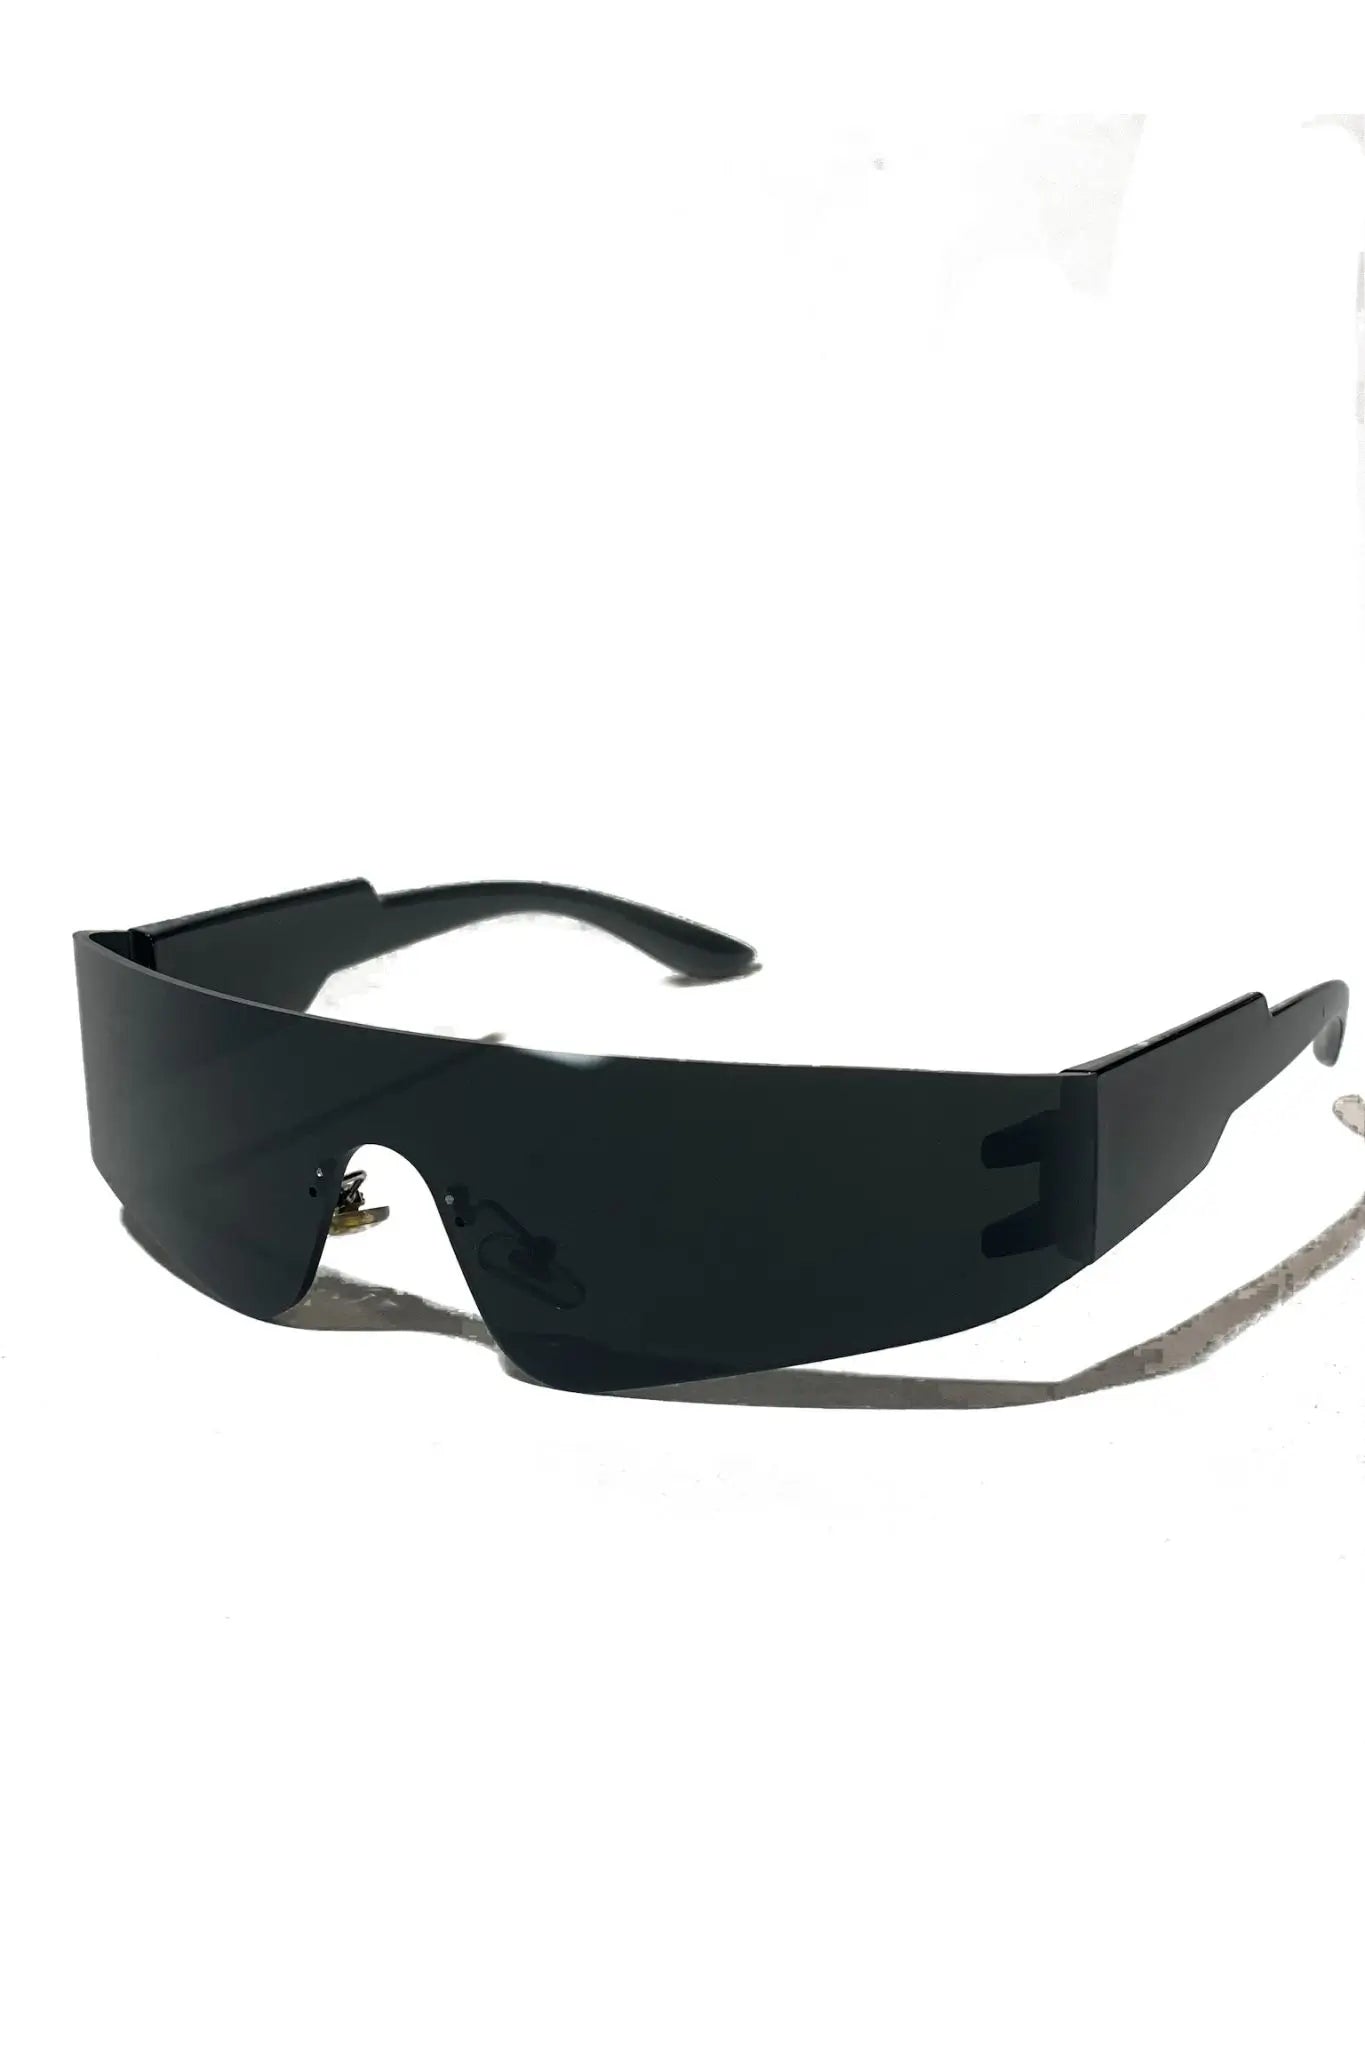 Cyber Shades: Schwarze Unisex Rave Brille Sonnenbrille solo